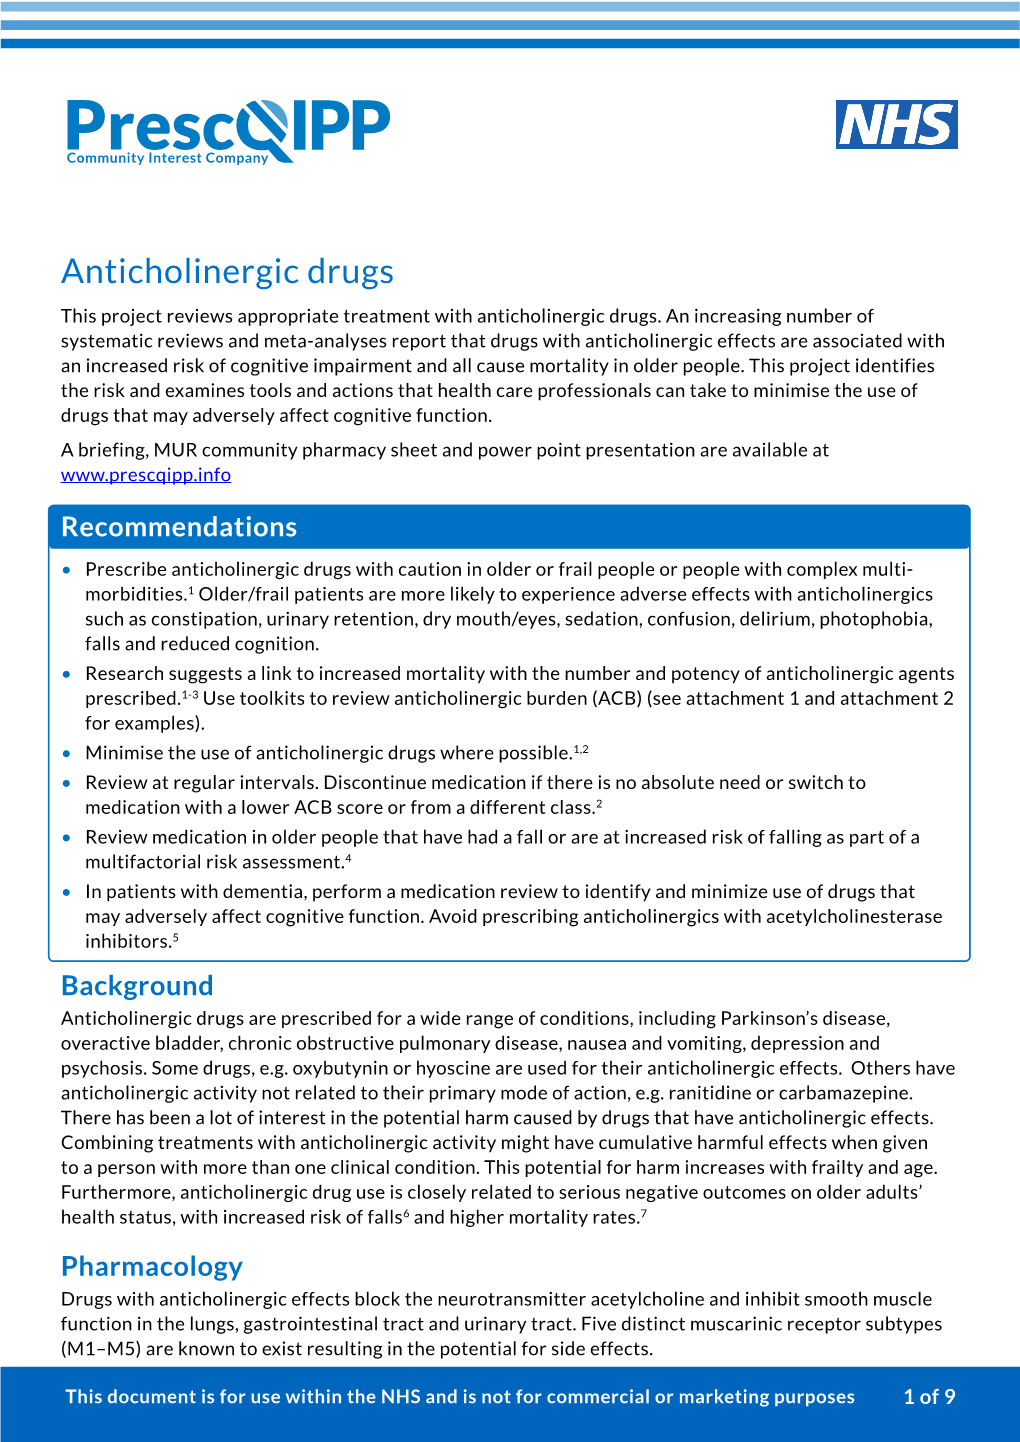 Anticholinergic Drugs / Burden